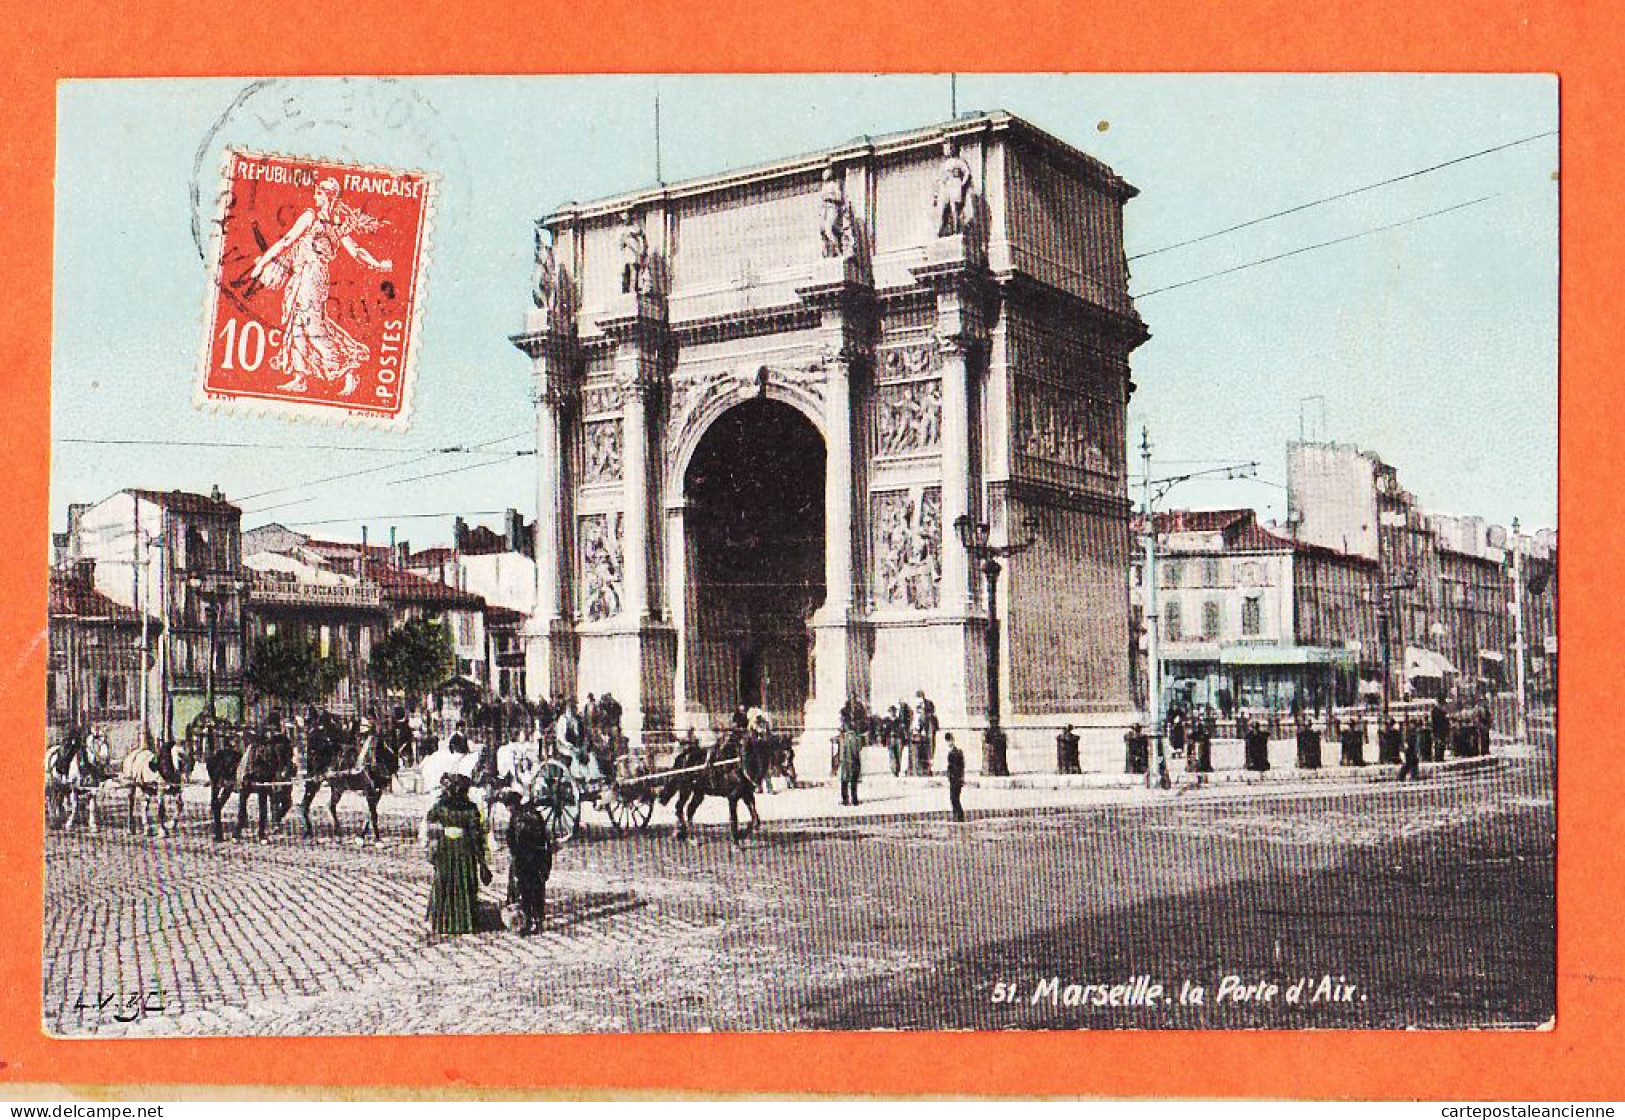 35013 / Aqua-Photo LEOPOLD VERGER 51 MARSEILLE (13) La Porte D' AIX 1910 à GARIDOU Mercerie Port-Vendres - Canebière, Stadtzentrum